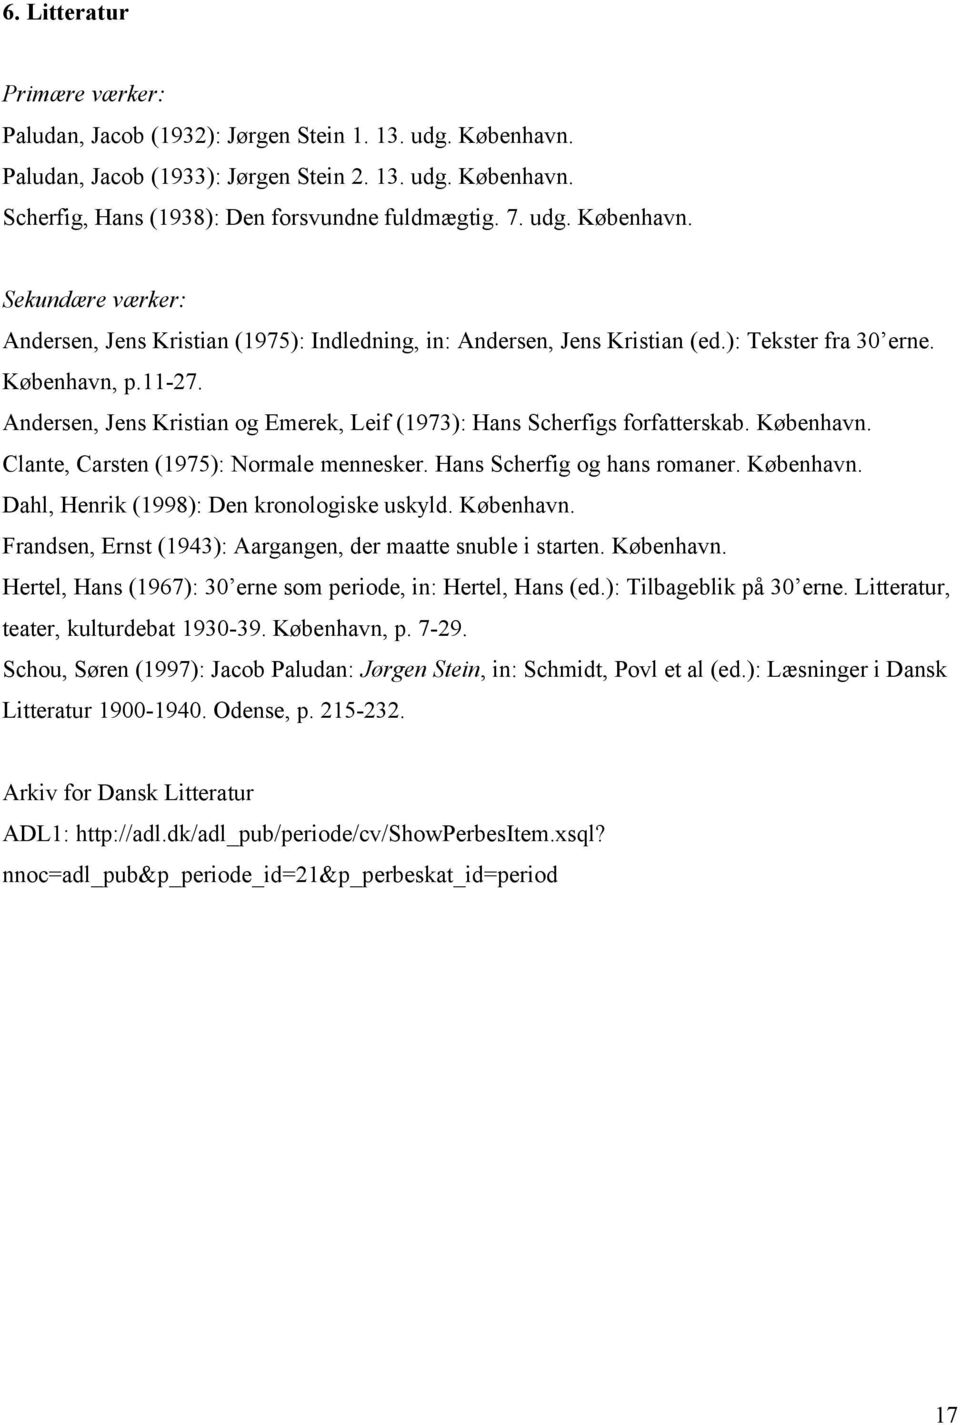 Andersen, Jens Kristian og Emerek, Leif (1973): Hans Scherfigs forfatterskab. København. Clante, Carsten (1975): Normale mennesker. Hans Scherfig og hans romaner. København. Dahl, Henrik (1998): Den kronologiske uskyld.